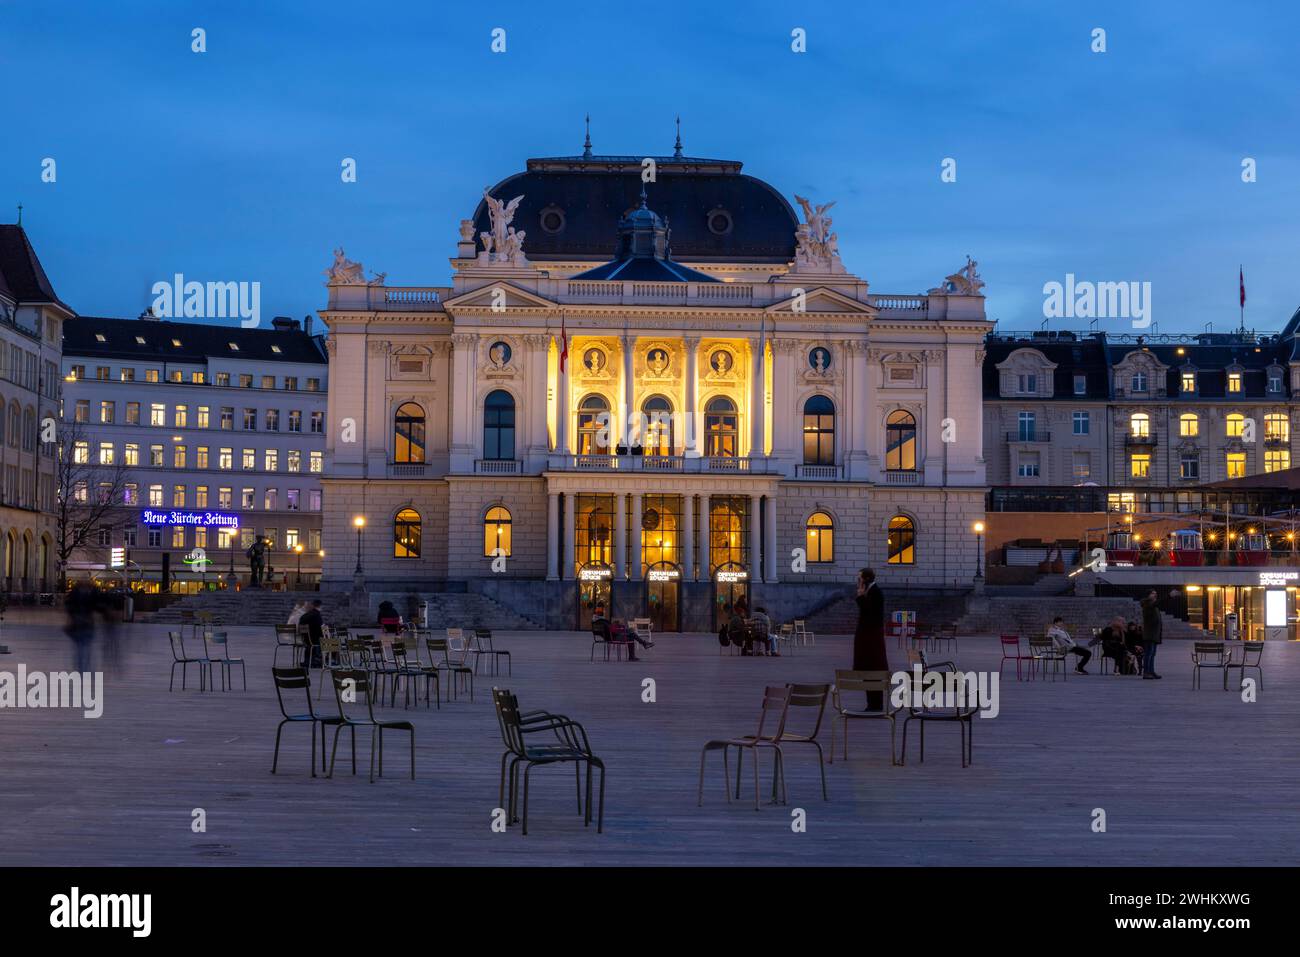 Evening atmosphere at Sechselaeutenplatz, Opera House, City of Zurich, Canton of Zurich, Switzerland Stock Photo